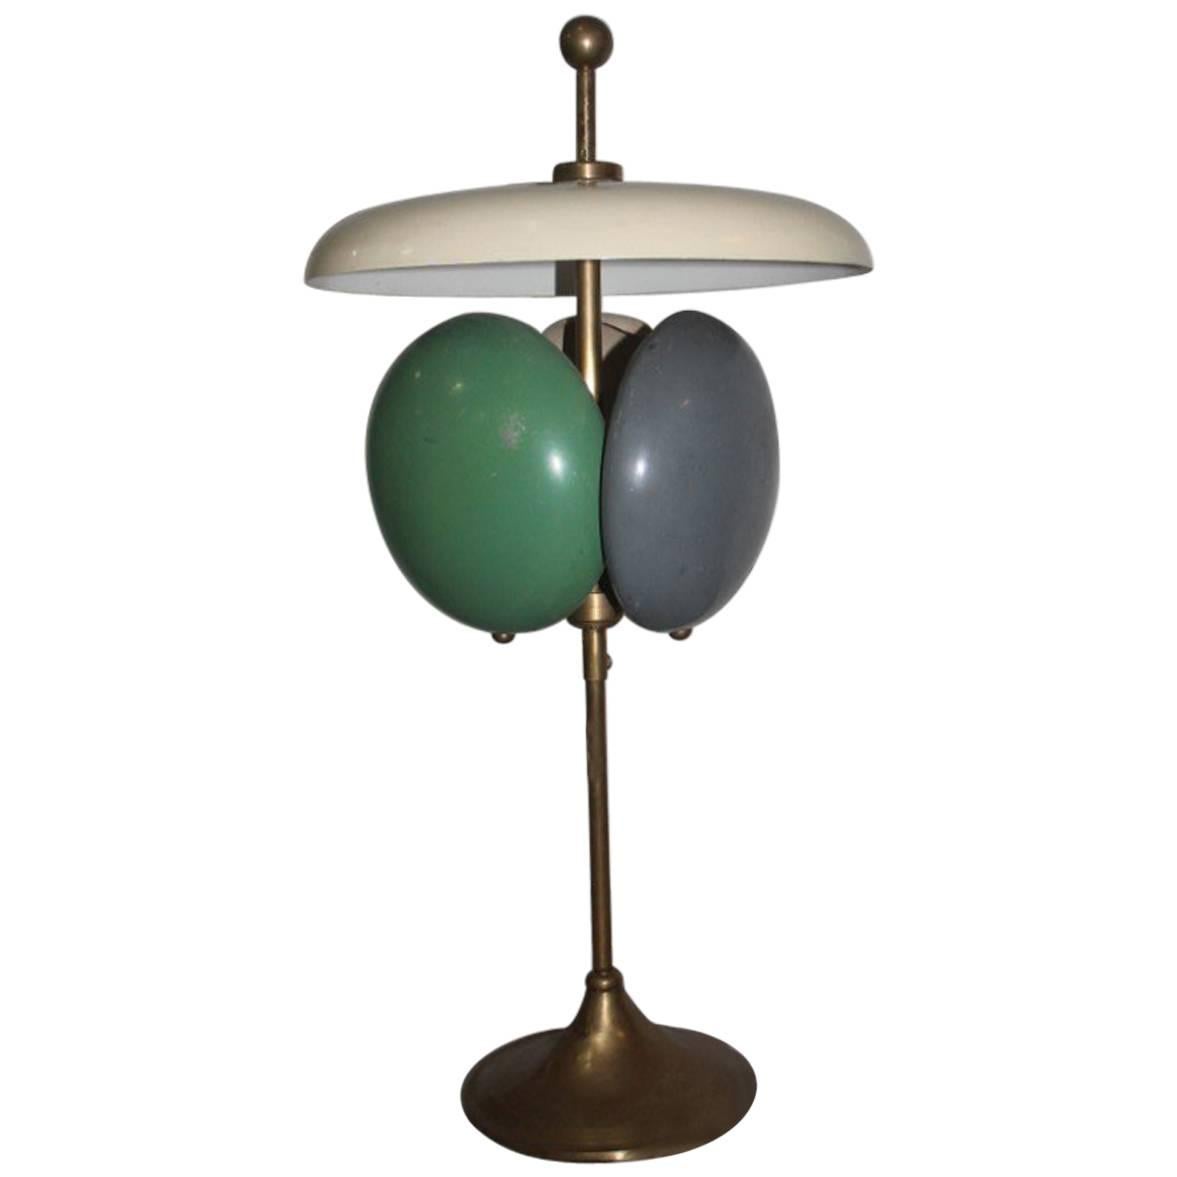 Mid-Century-Tischlampe, Metall lackiert, 1950er Jahre, italienisches Design, mehrfarbig